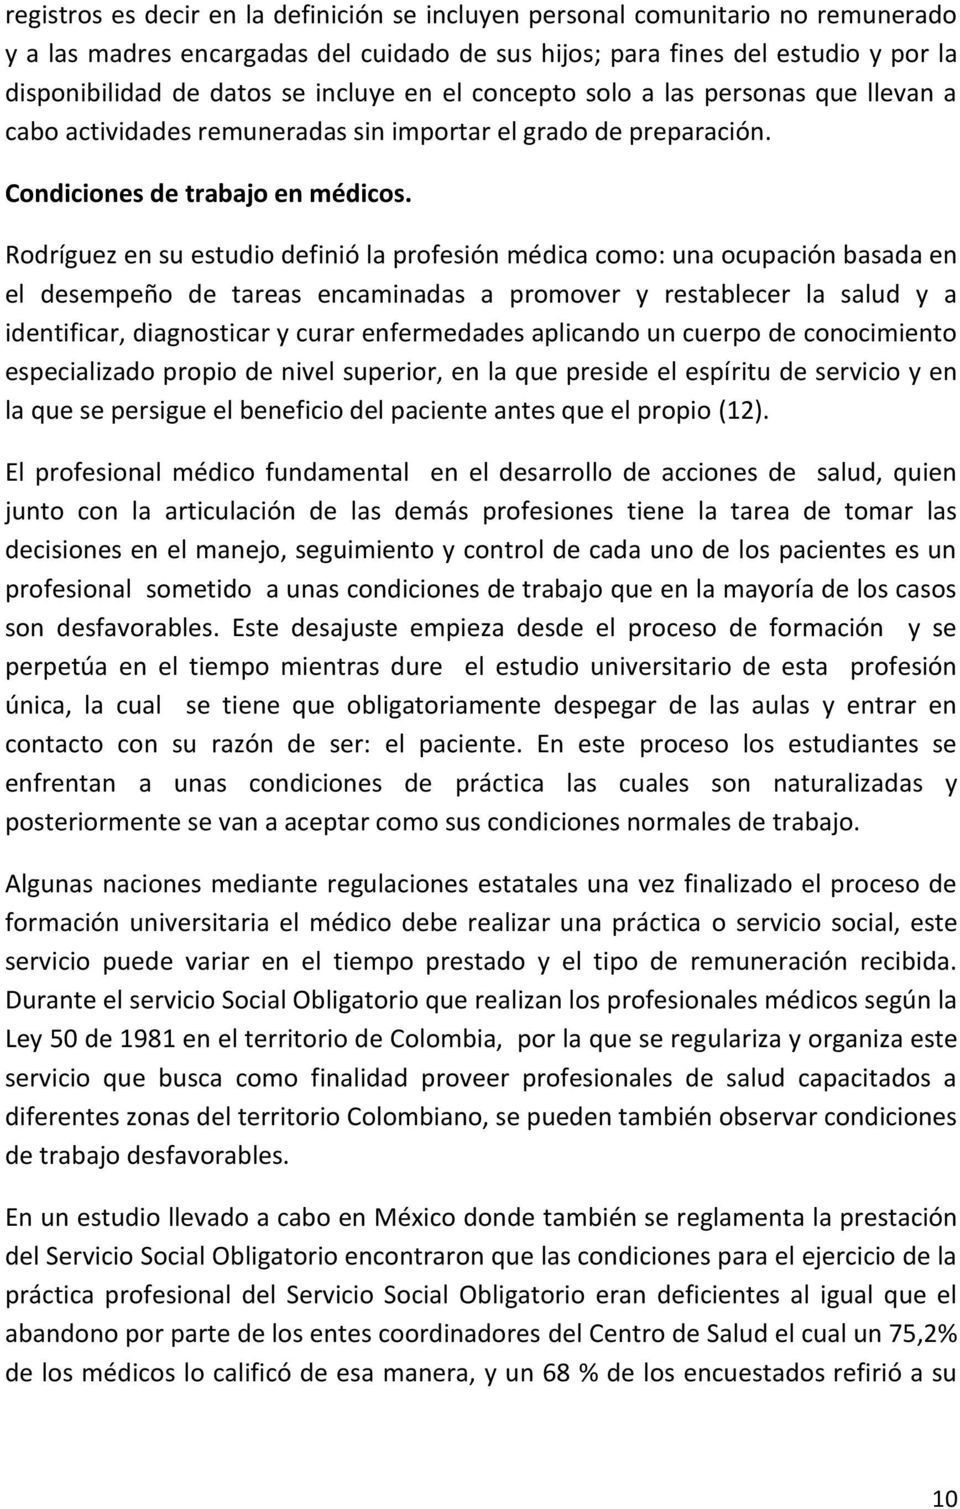 Rodríguez en su estudio definió la profesión médica como: una ocupación basada en el desempeño de tareas encaminadas a promover y restablecer la salud y a identificar, diagnosticar y curar